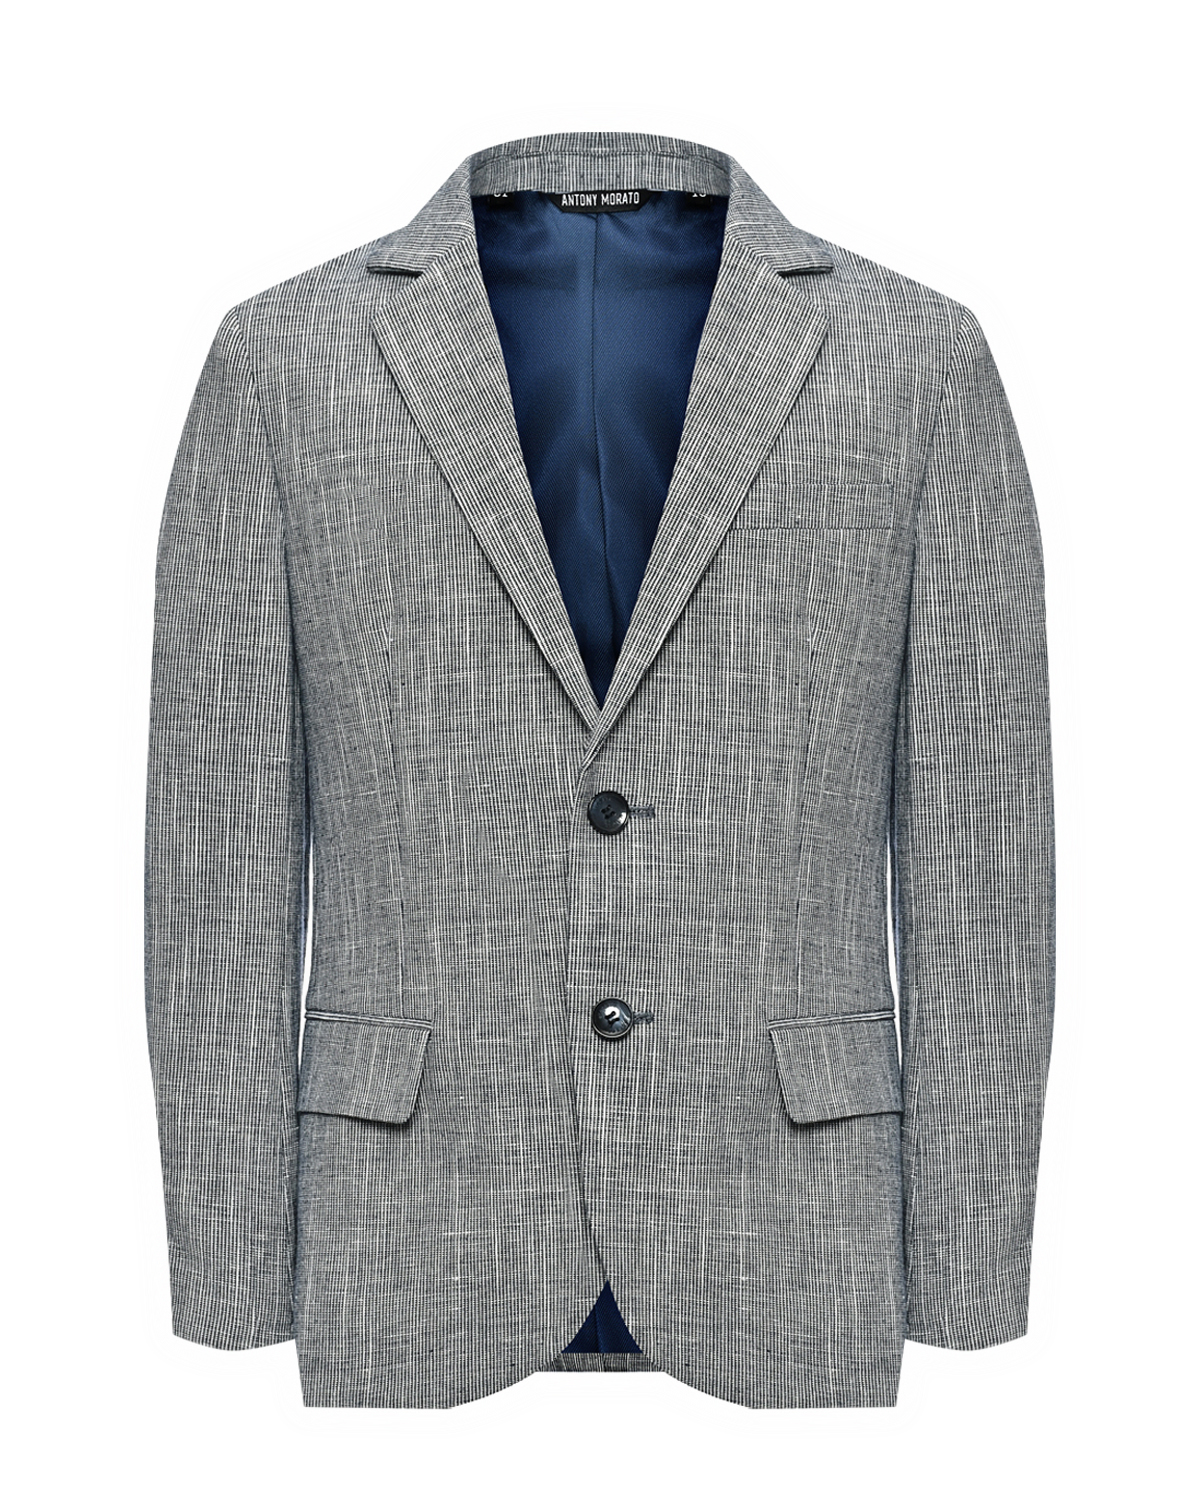 Пиджак однобортный серый, текстурная ткань Antony Morato, размер 140, цвет нет цвета - фото 1